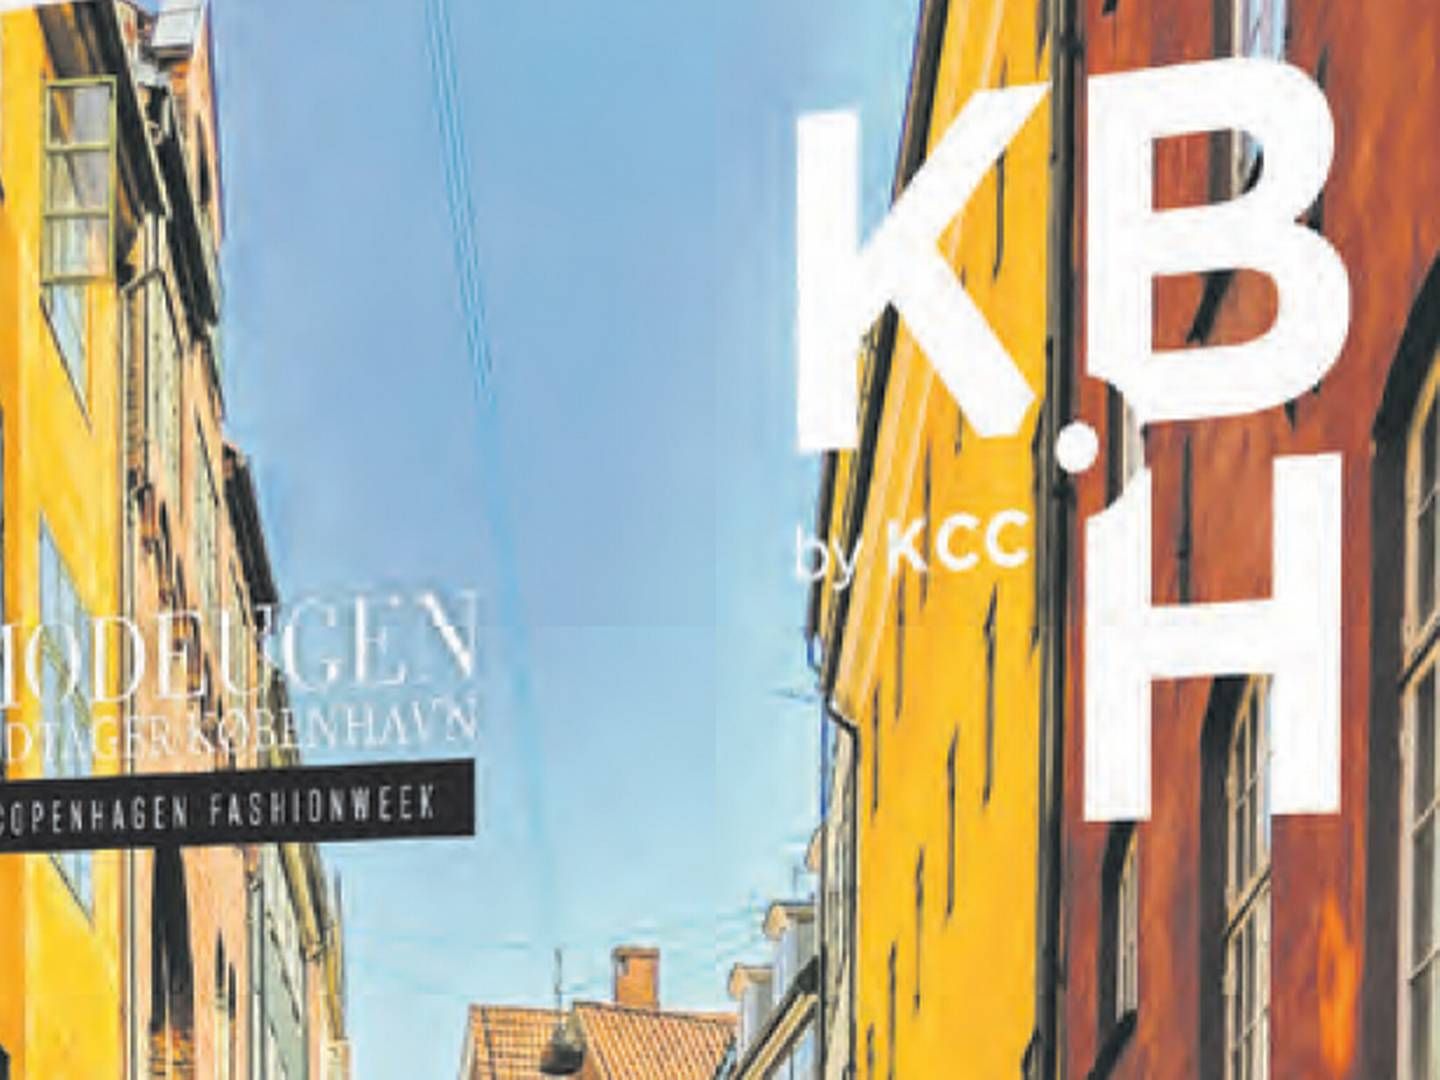 Foto: Forside af magasinet "KBH by KCC"